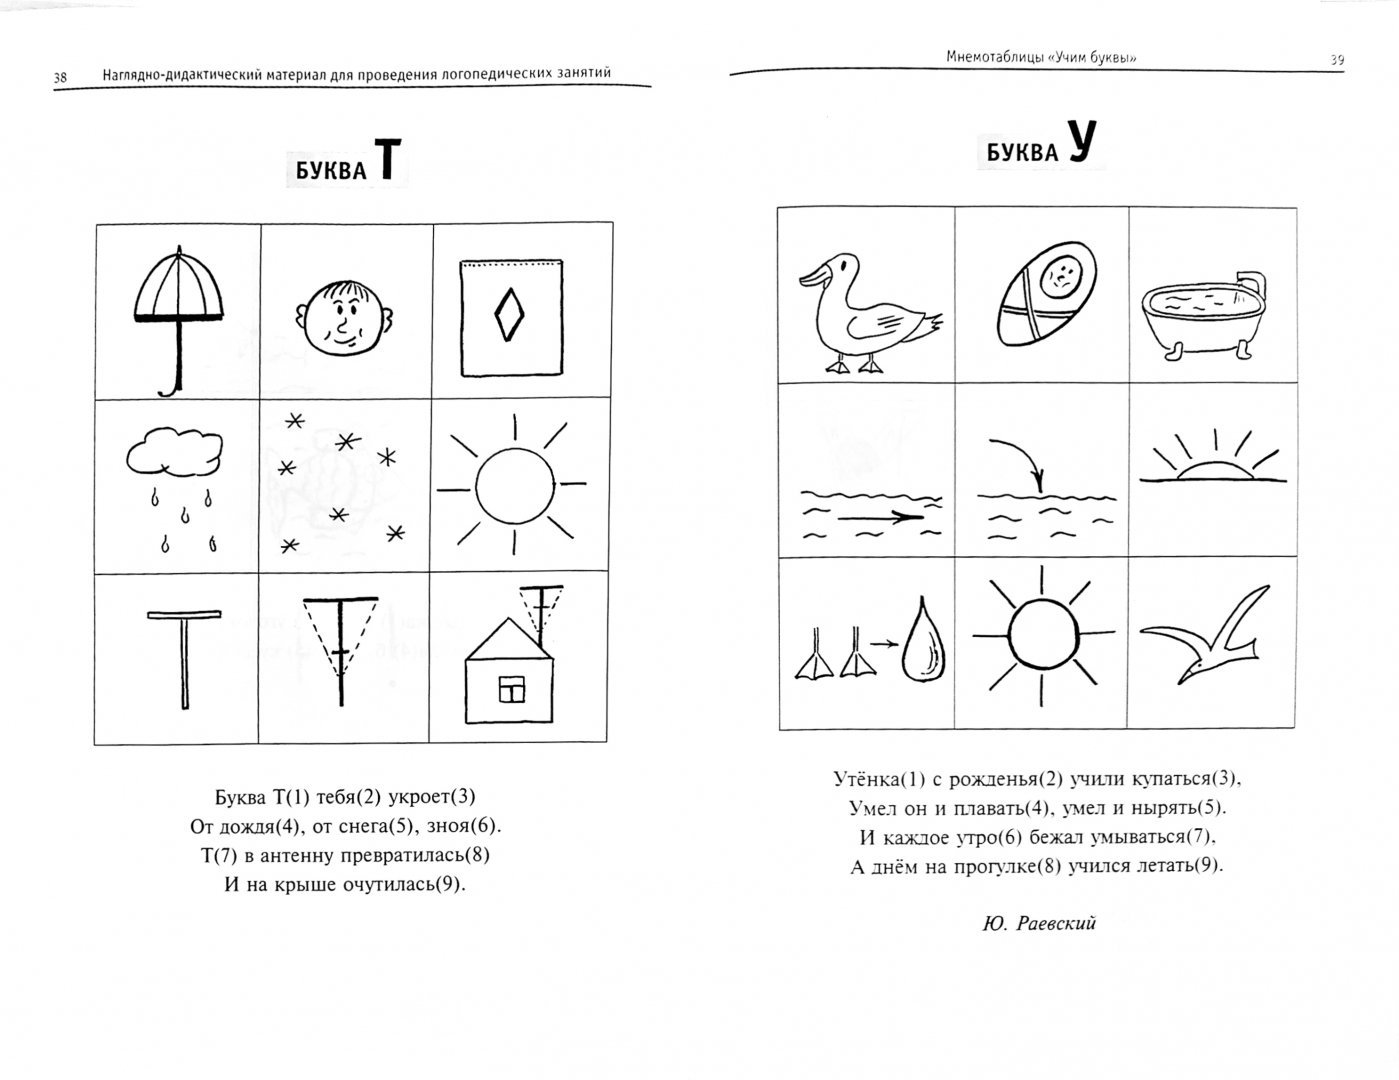 Иллюстрация 1 из 4 для Развиваем речь. Тренируем память. Использование приемов мнемотехники в работе логопеда - Розова, Коробченко | Лабиринт - книги. Источник: Лабиринт